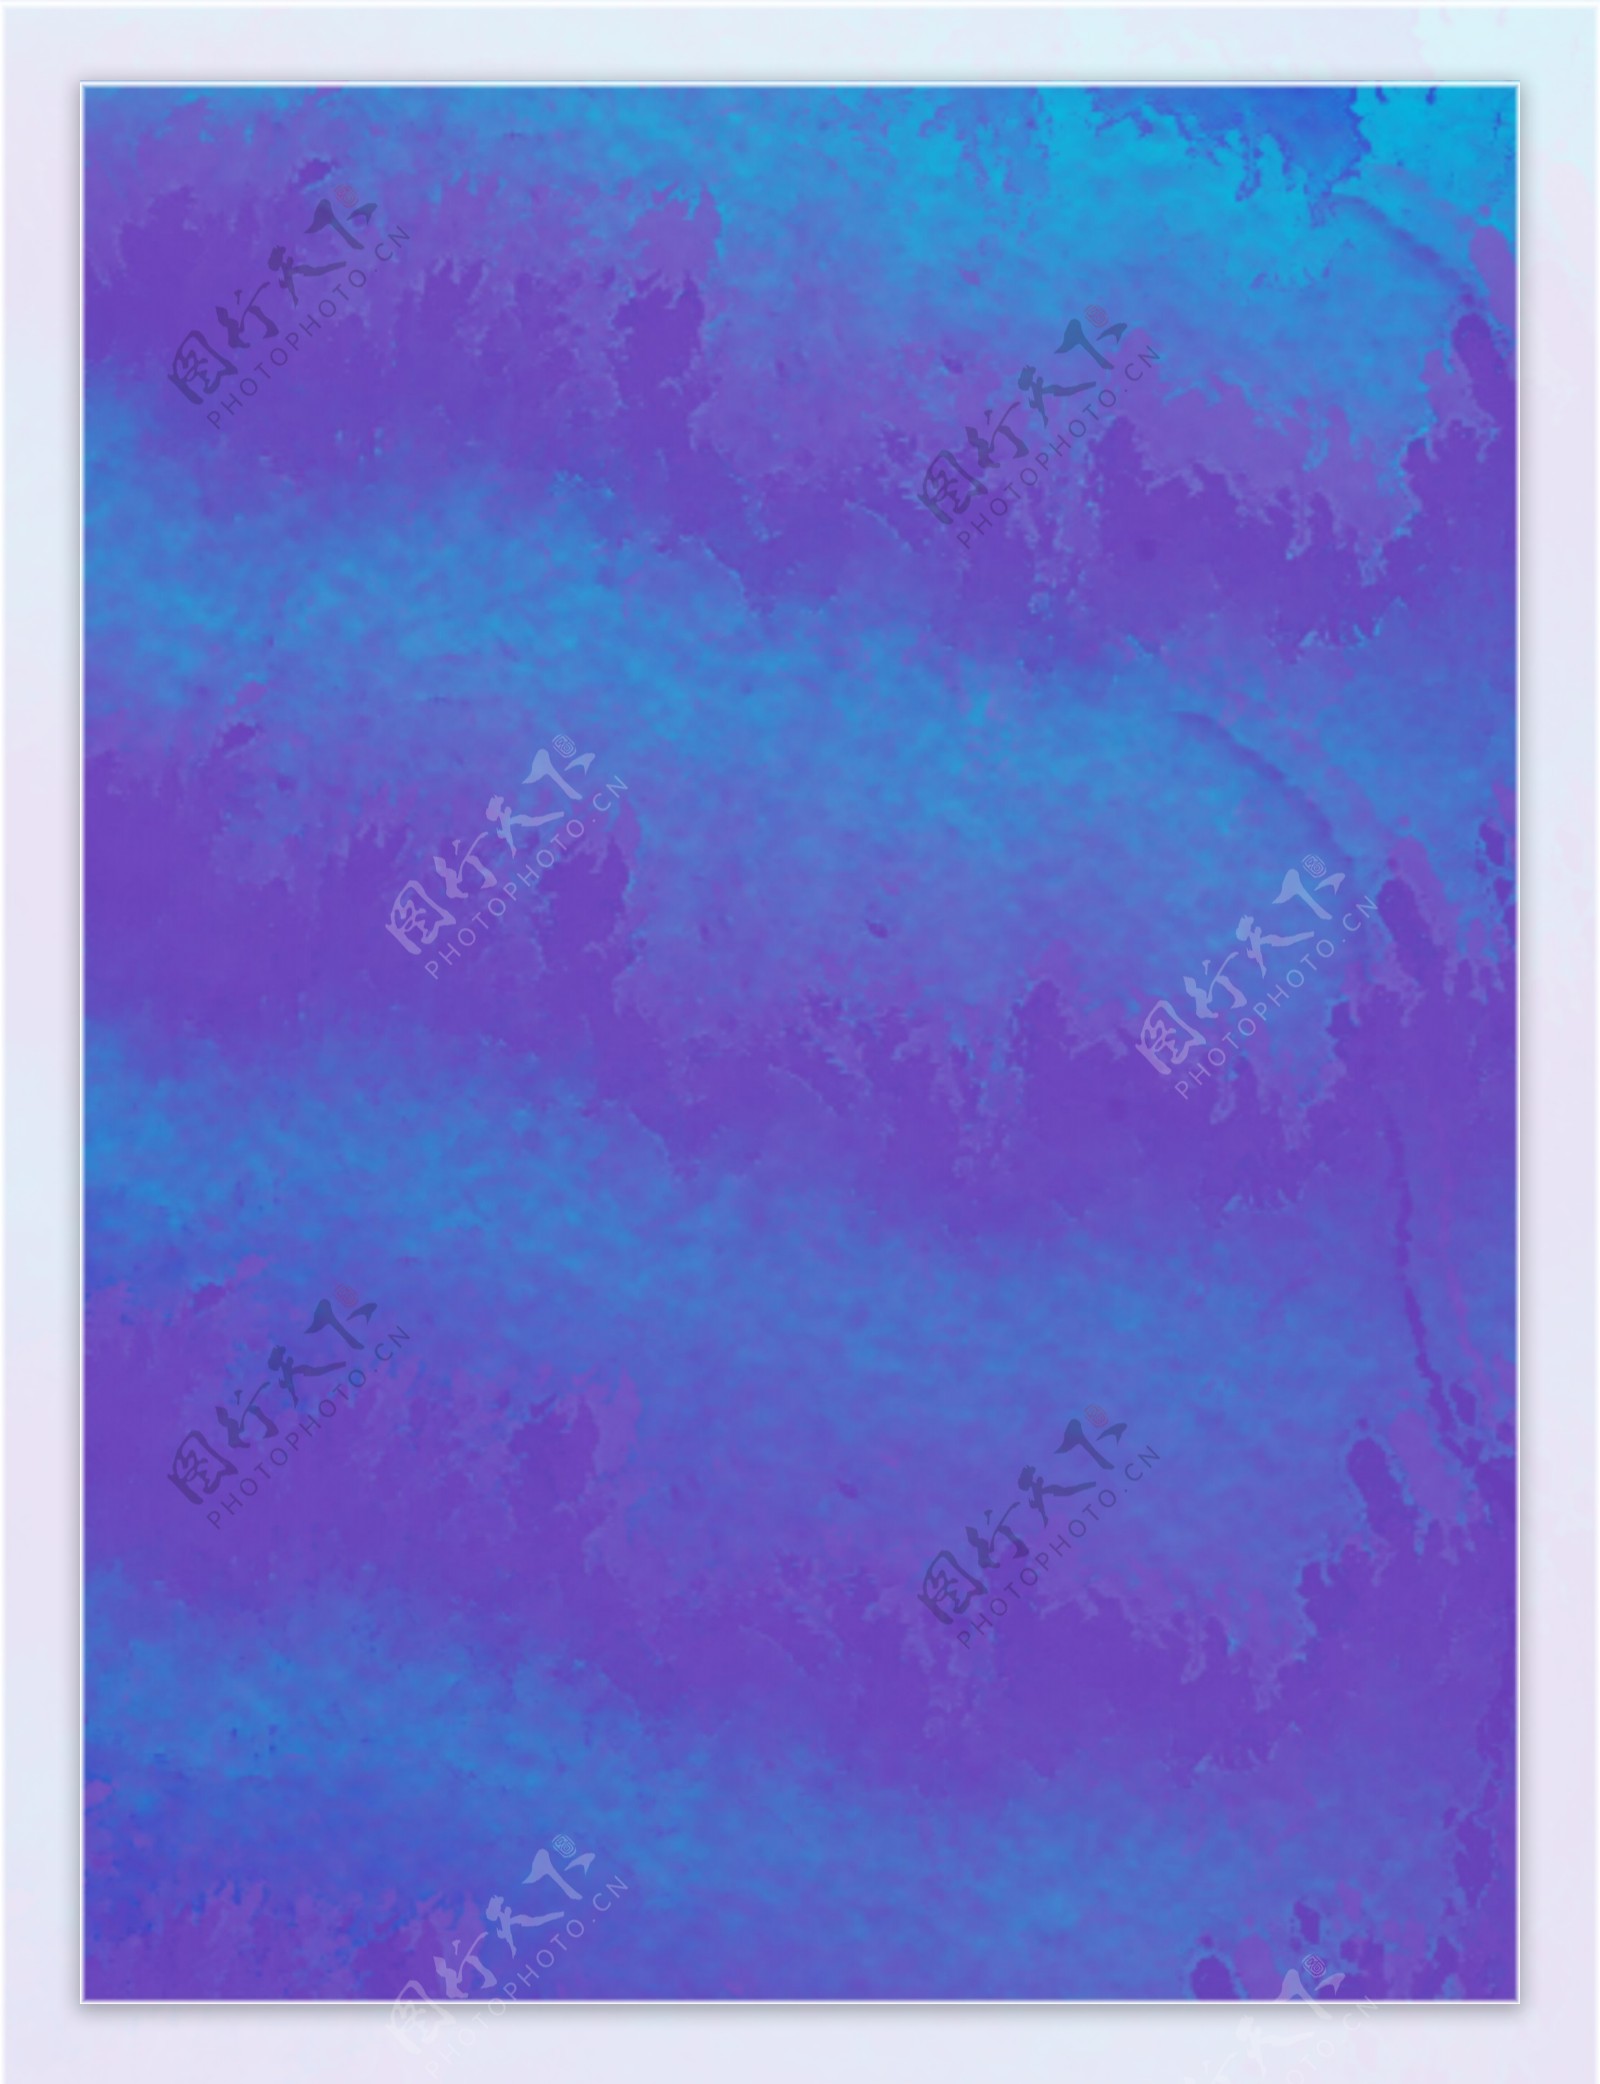 紫蓝纹理水彩背景